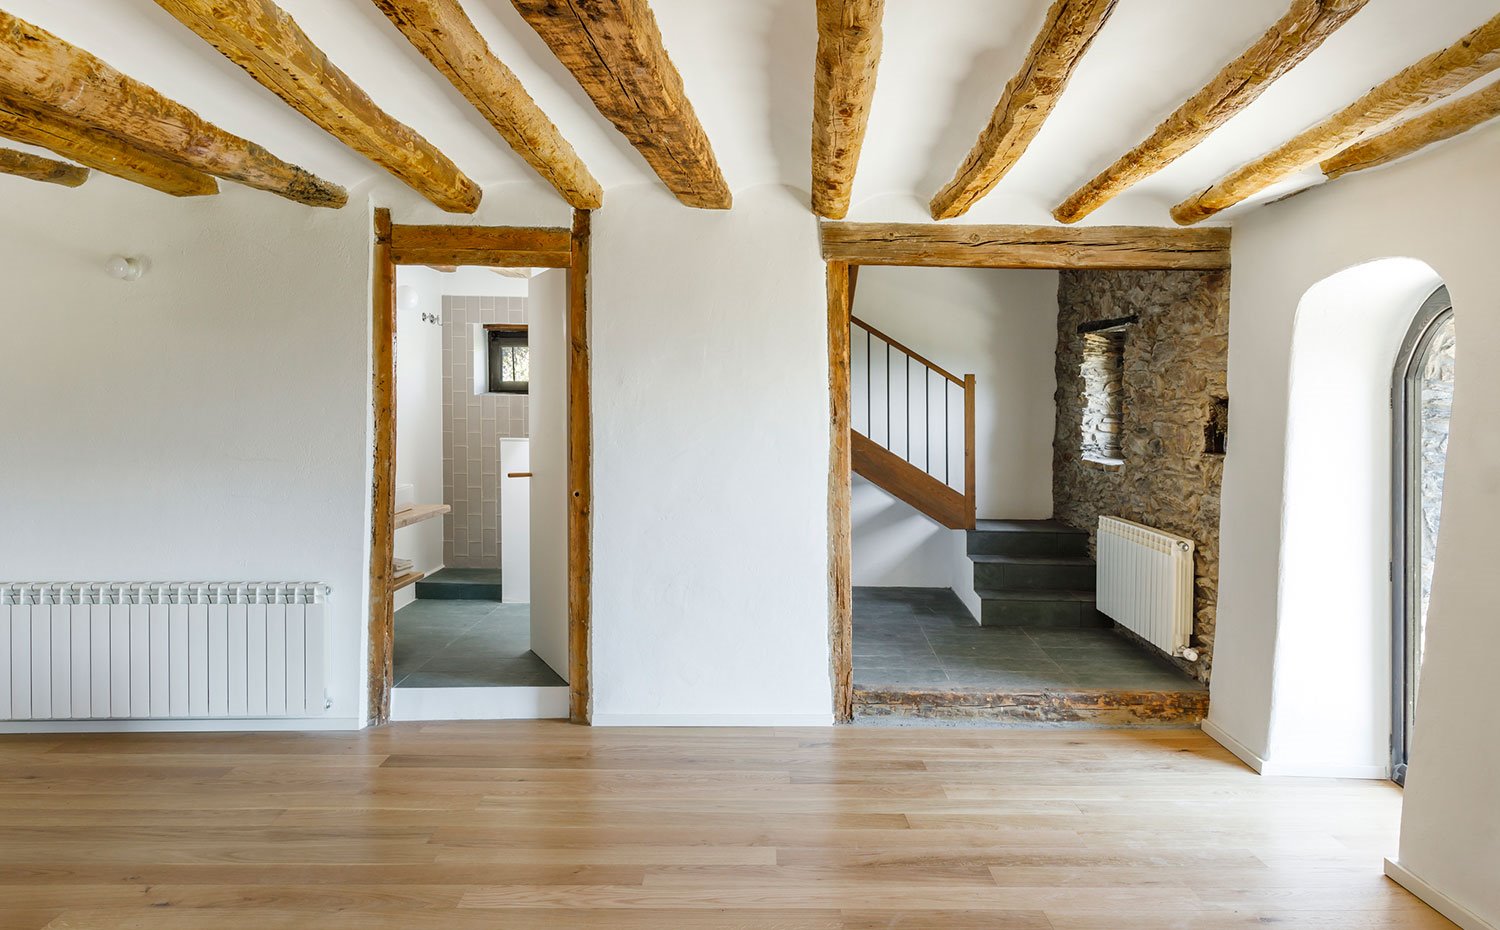 Zona diáfana con acceso a cuarto de baño y escaleras que conducen a nivel superior, con marcos de madera y vigas en el techo